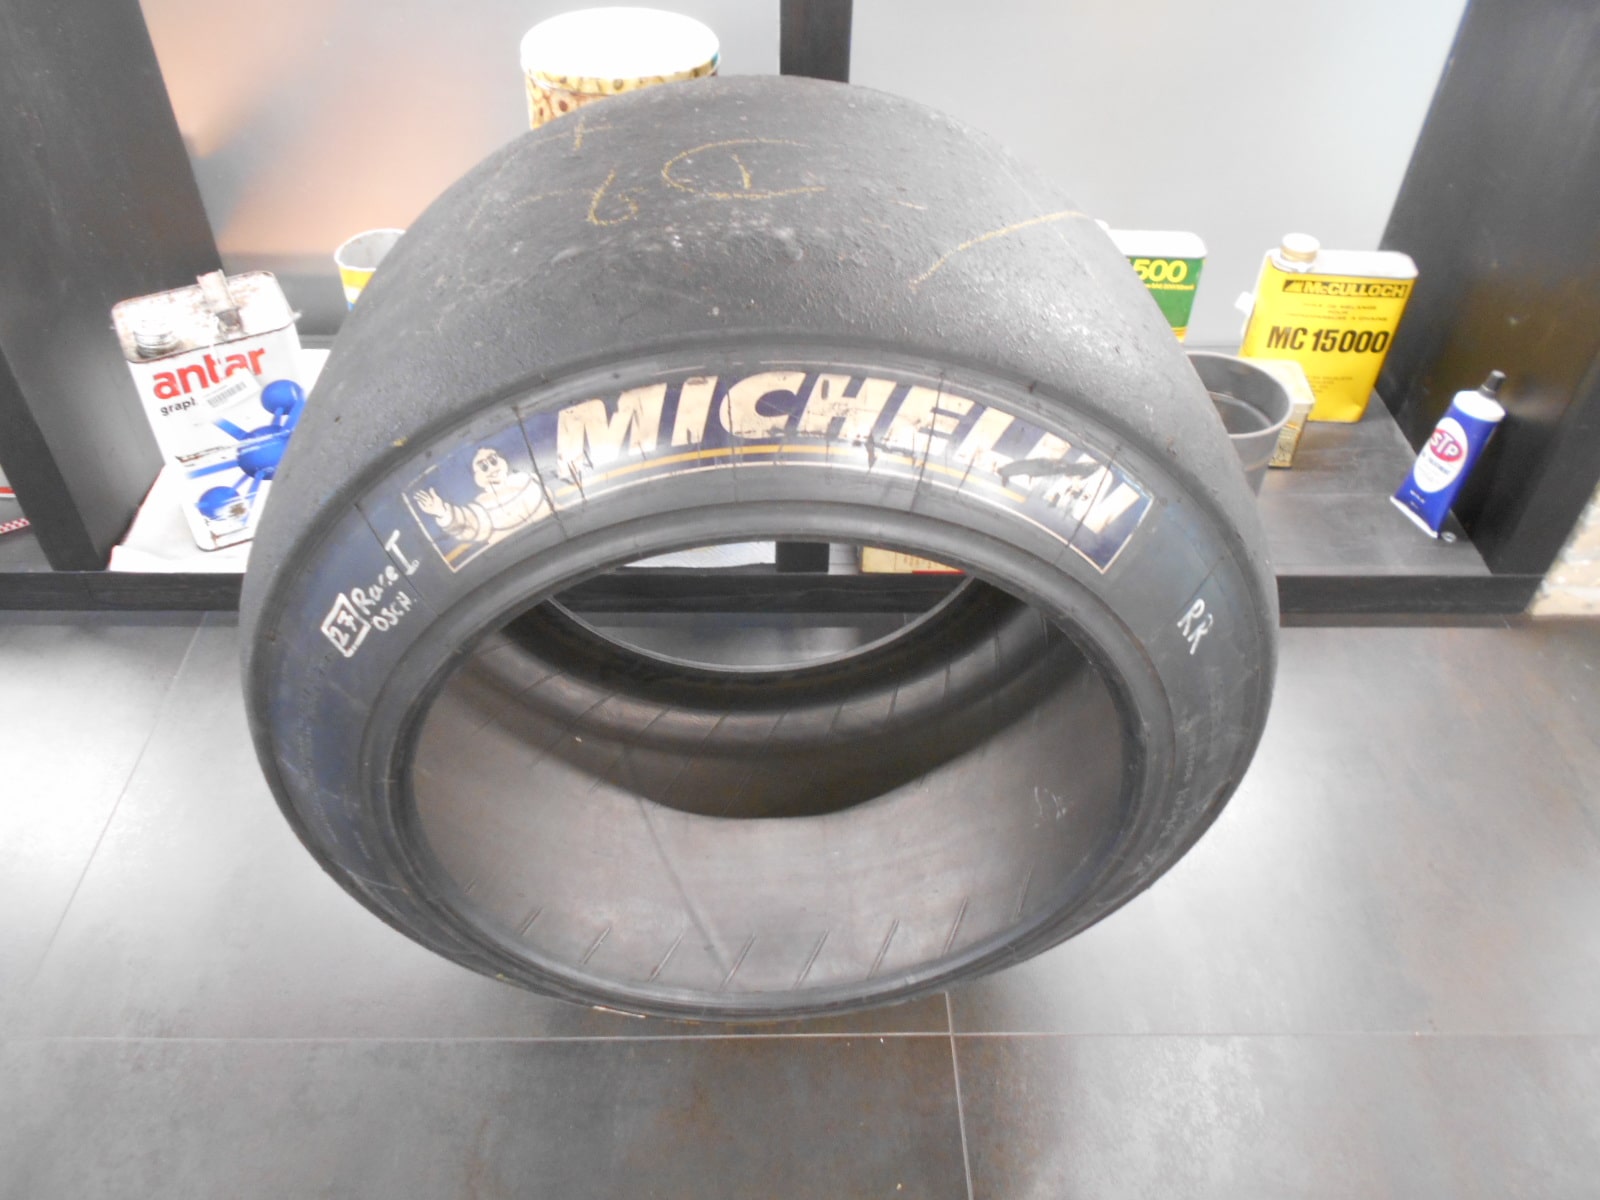 Gomma Michelin slick usata utilizzata su Ferrari